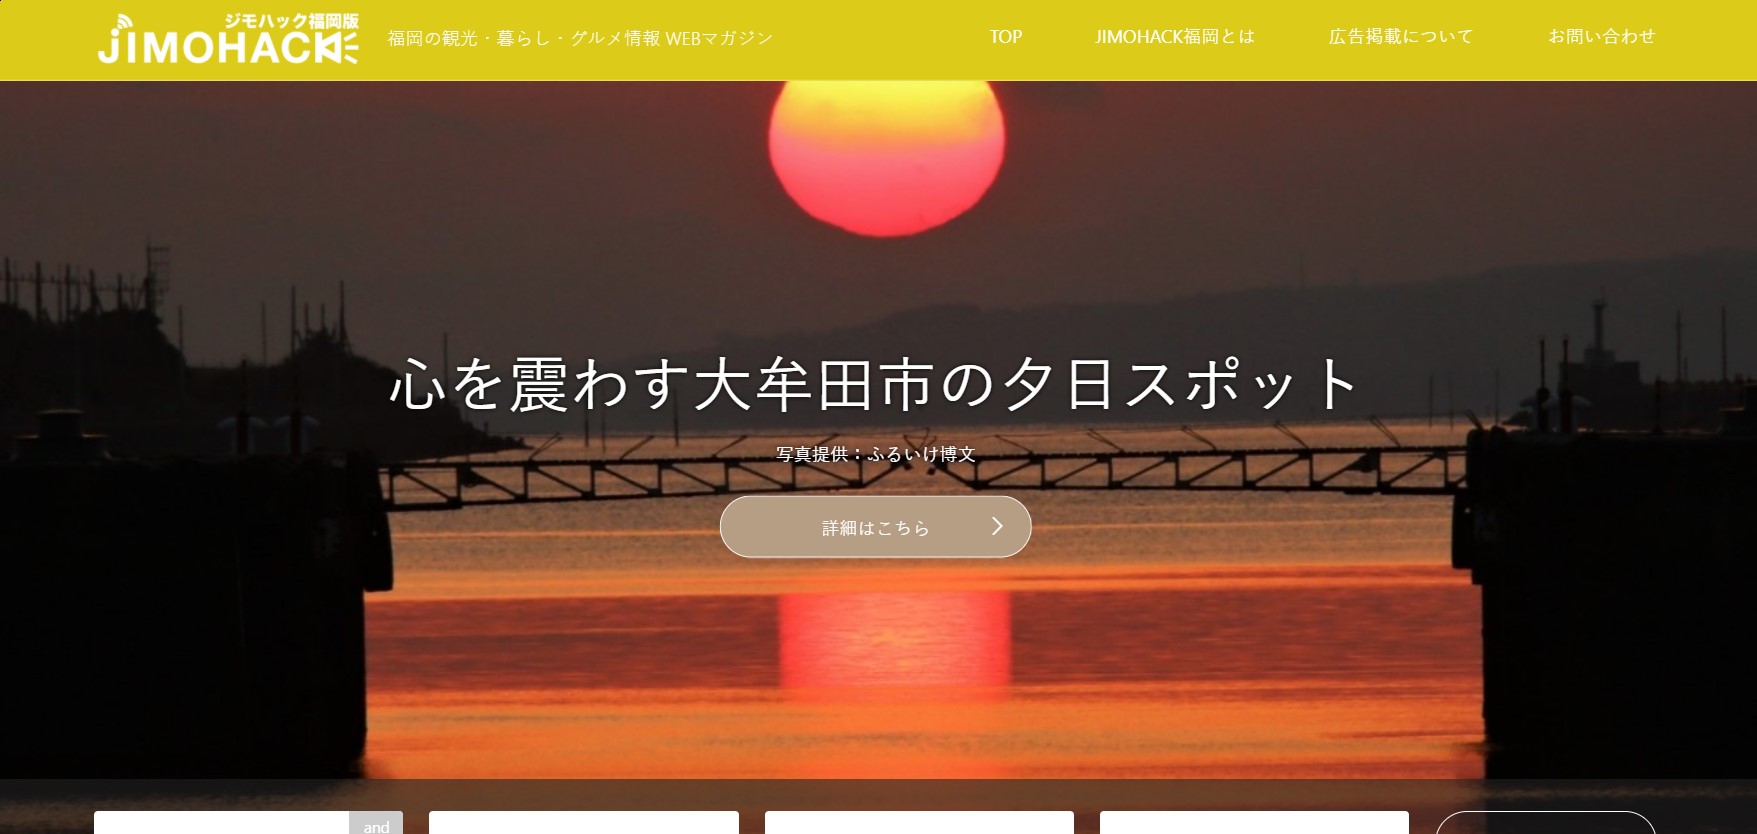 JIMOHACK福岡のトップページ